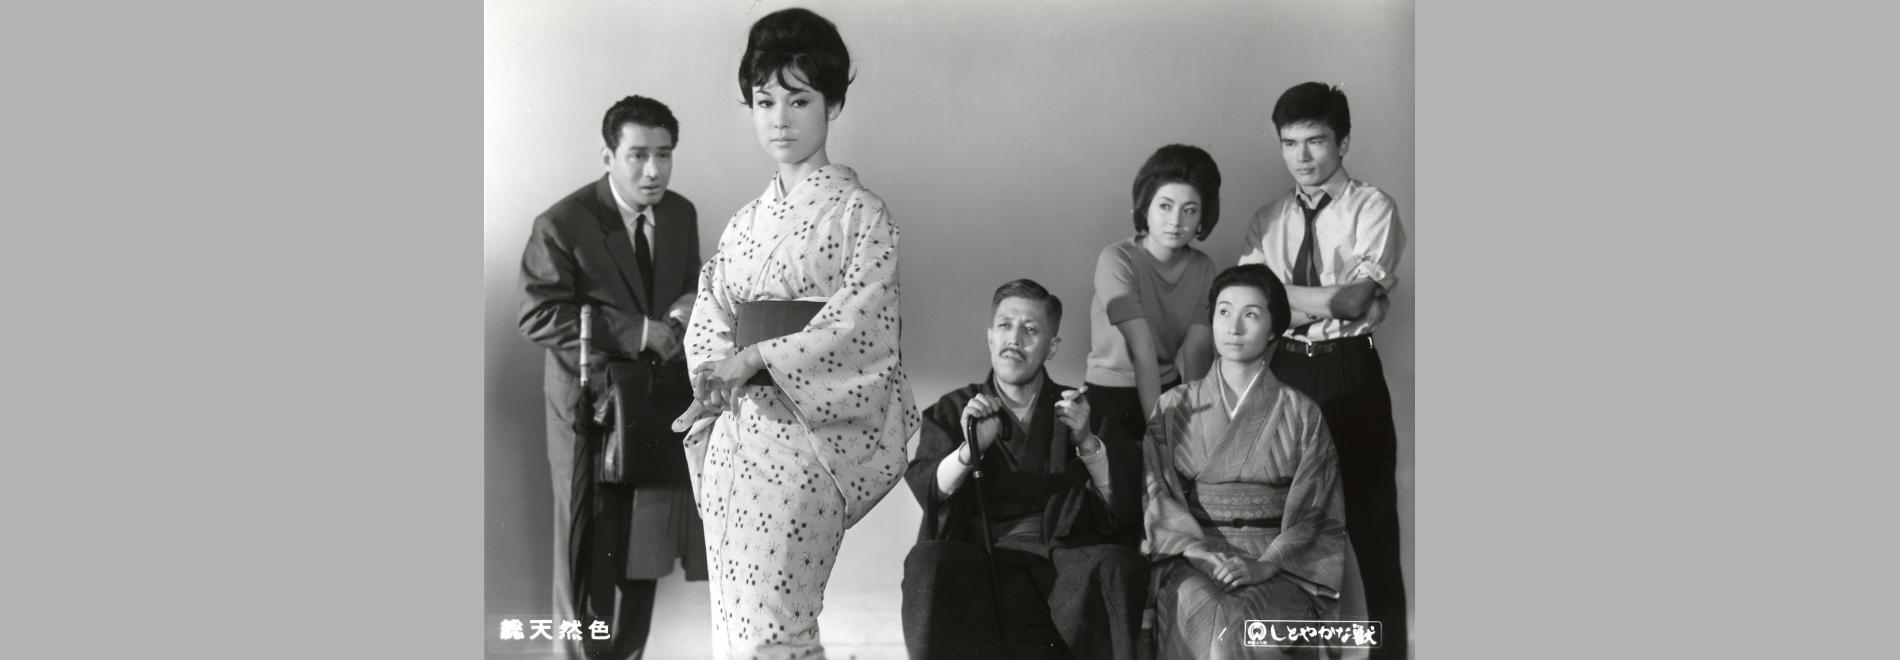 Shitoyakana kedamono ©1962 Kadokawa Pictures 